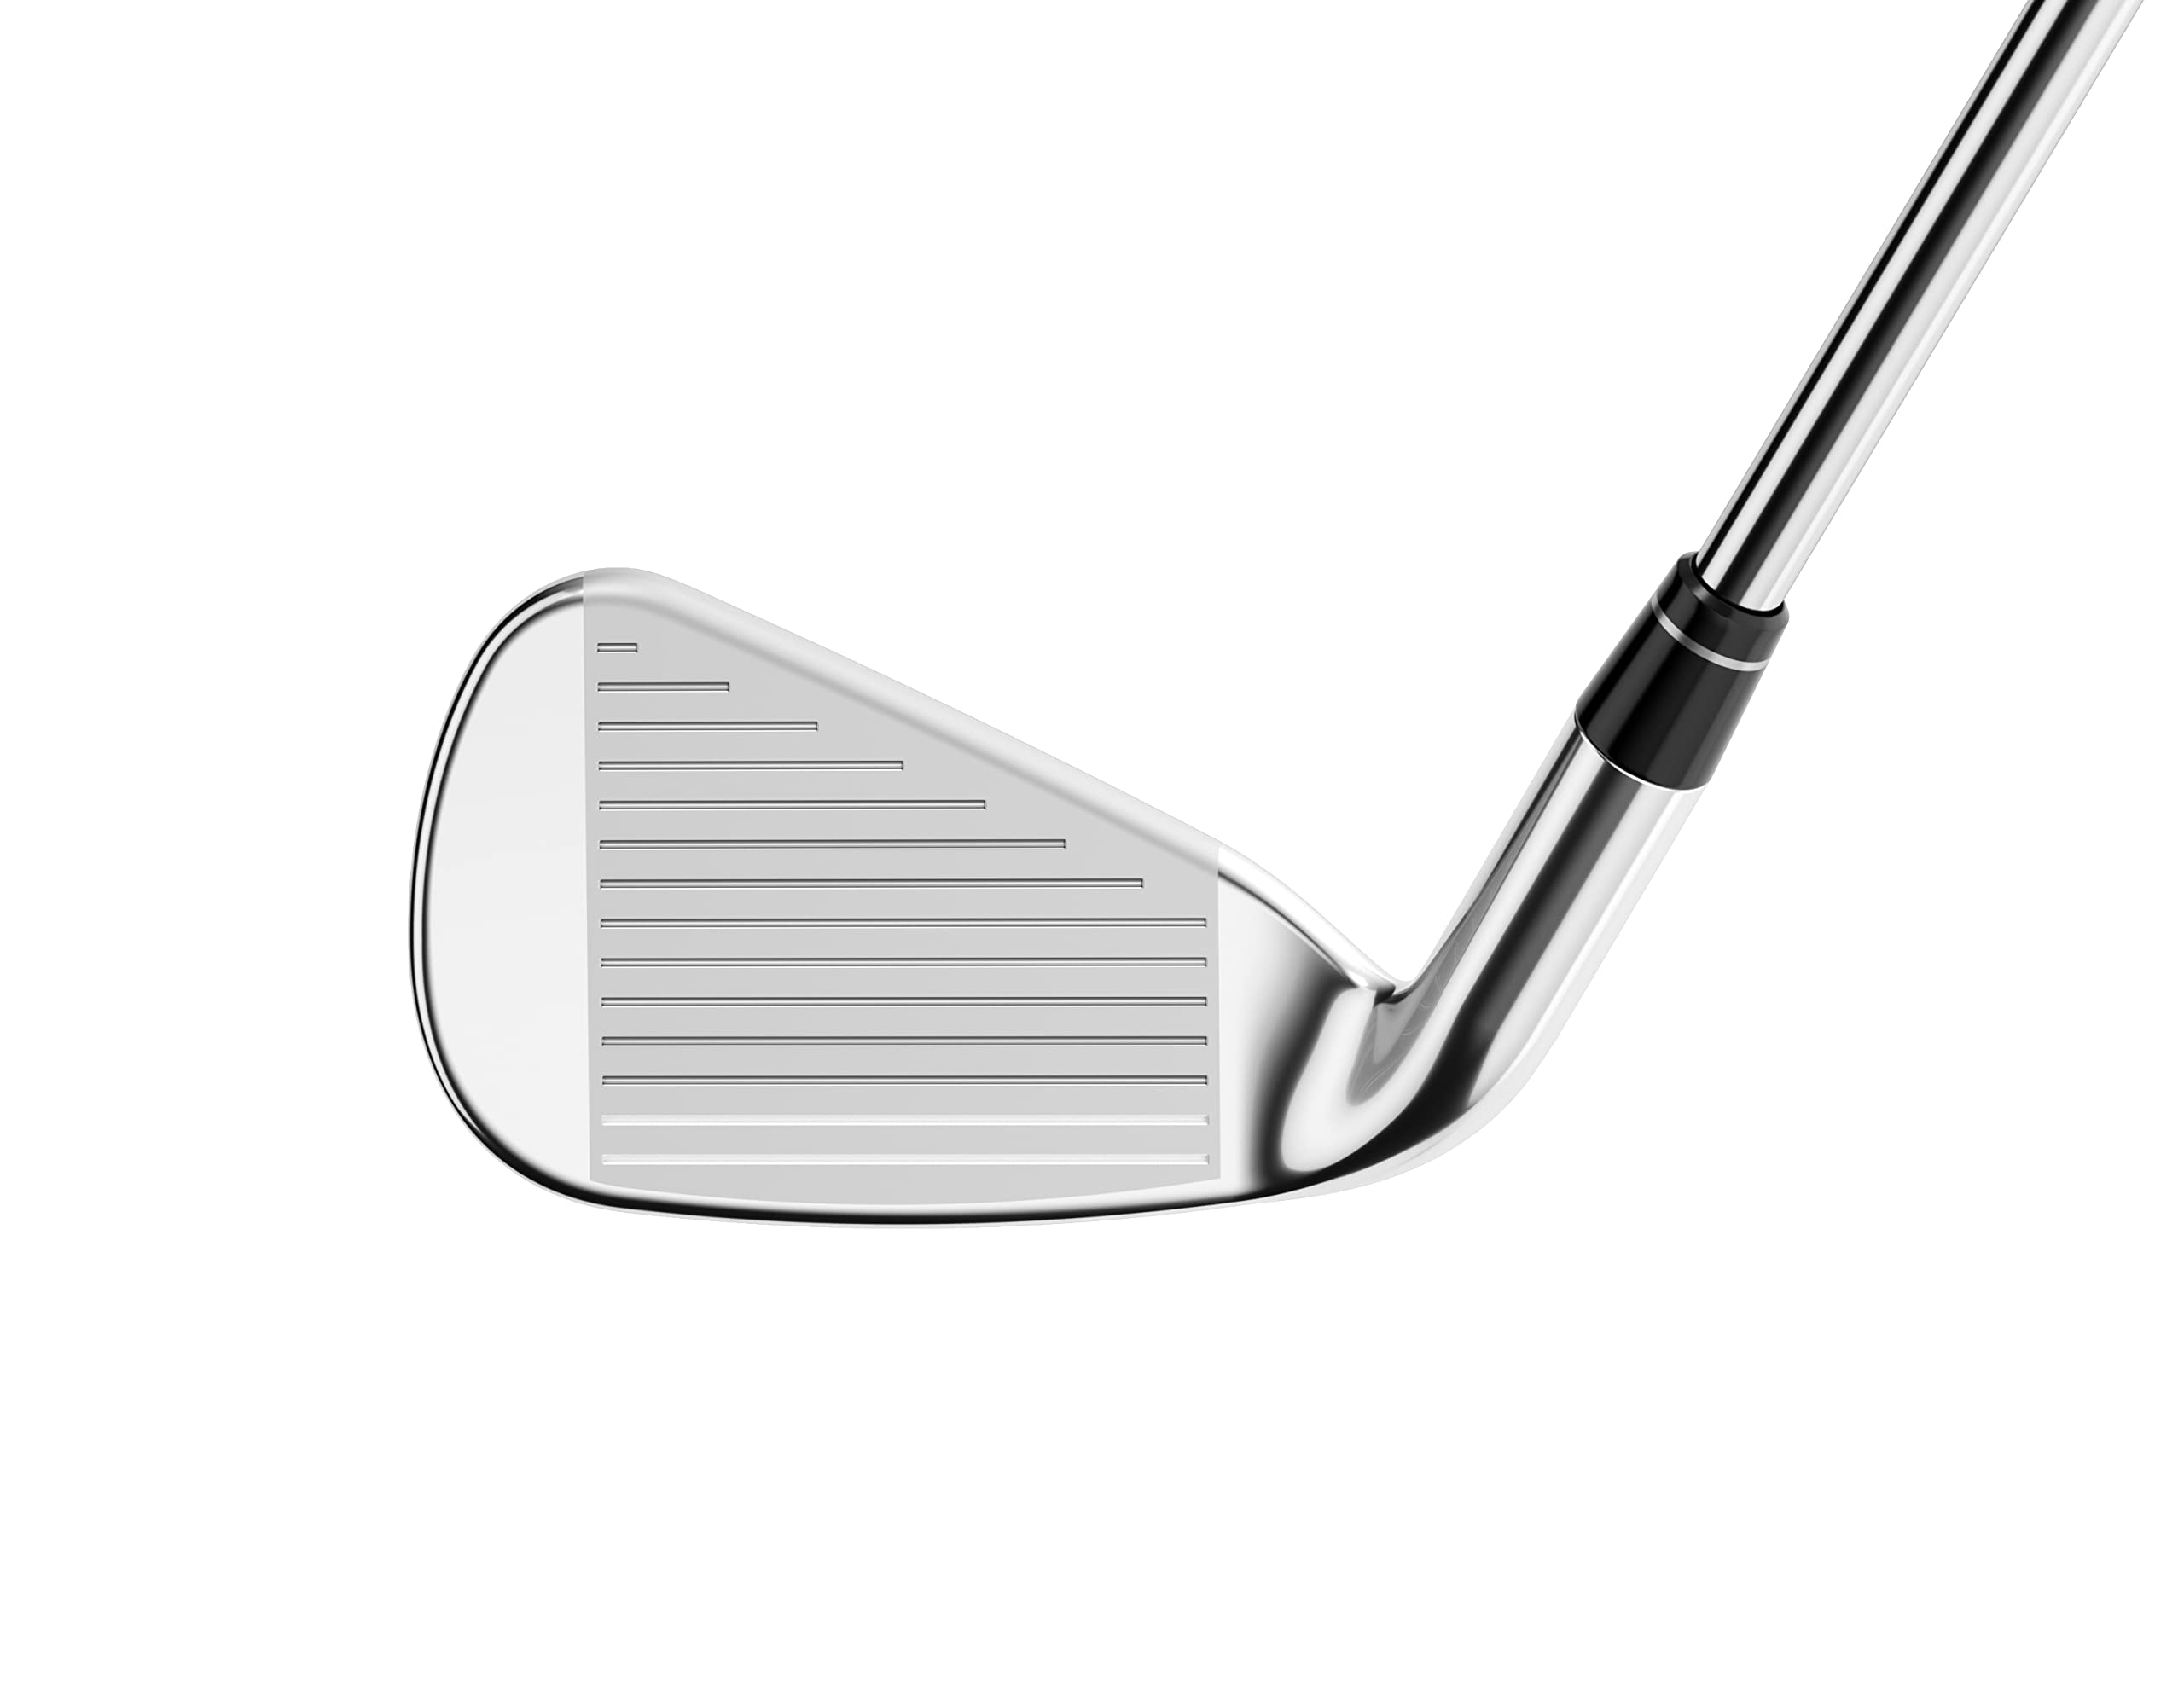 Callaway Golf Rogue ST MAX Individual Iron